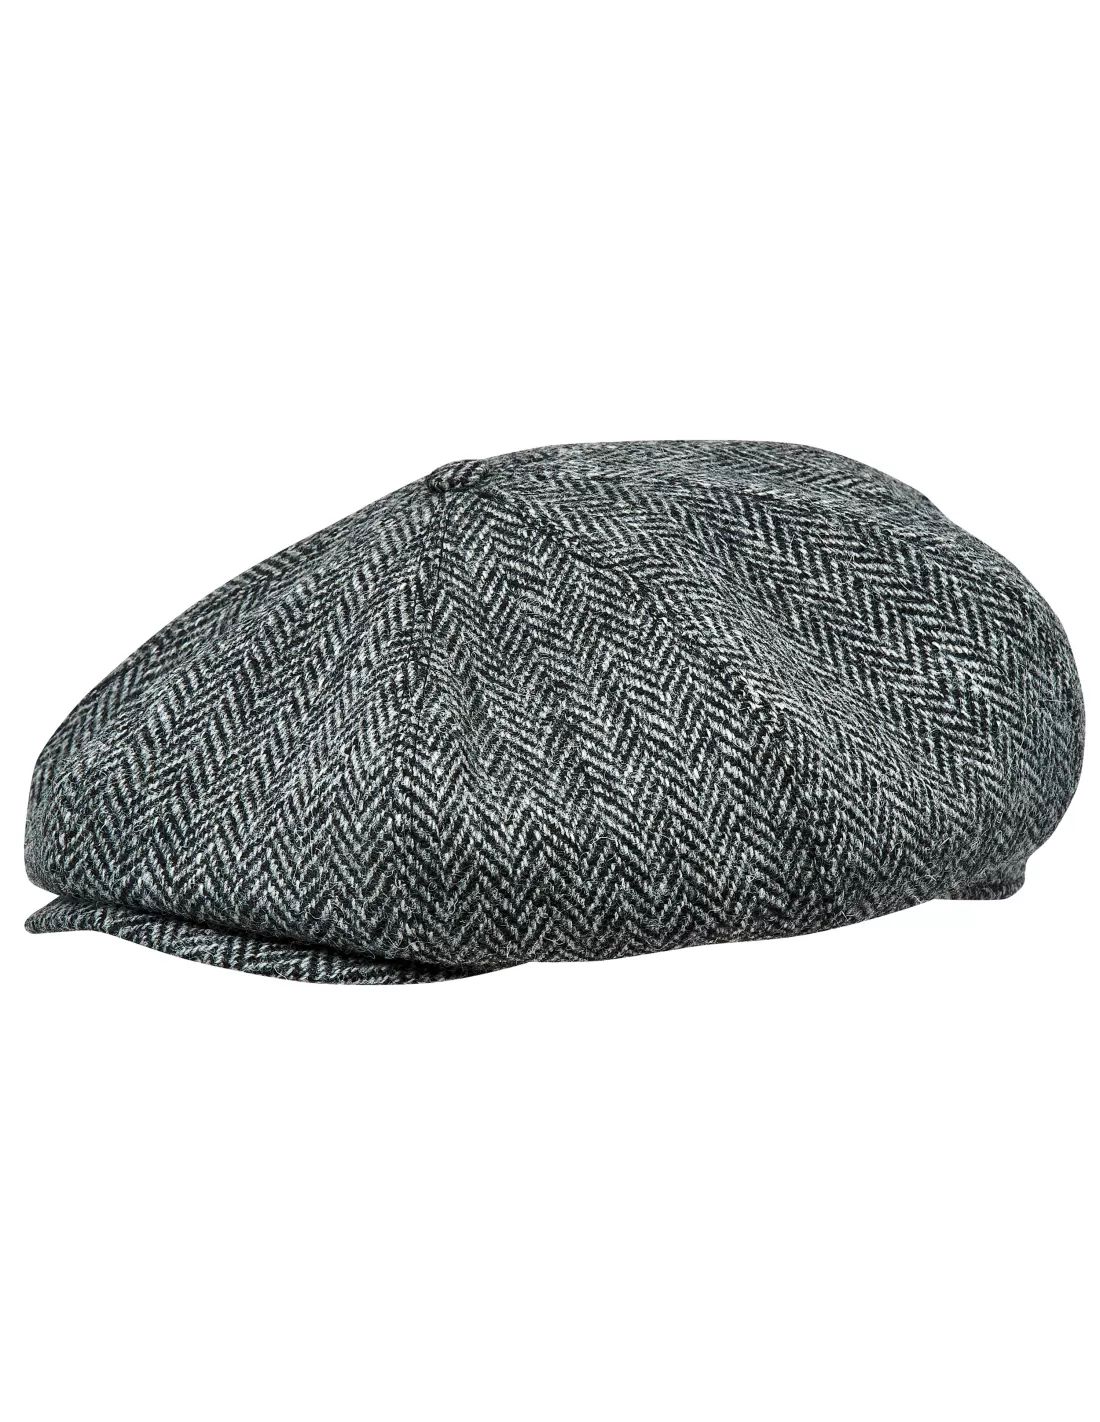 Kensington TWEED Peaky Blinders Newsboy Bakerboy Waterproof Cap Country Hat Wool 